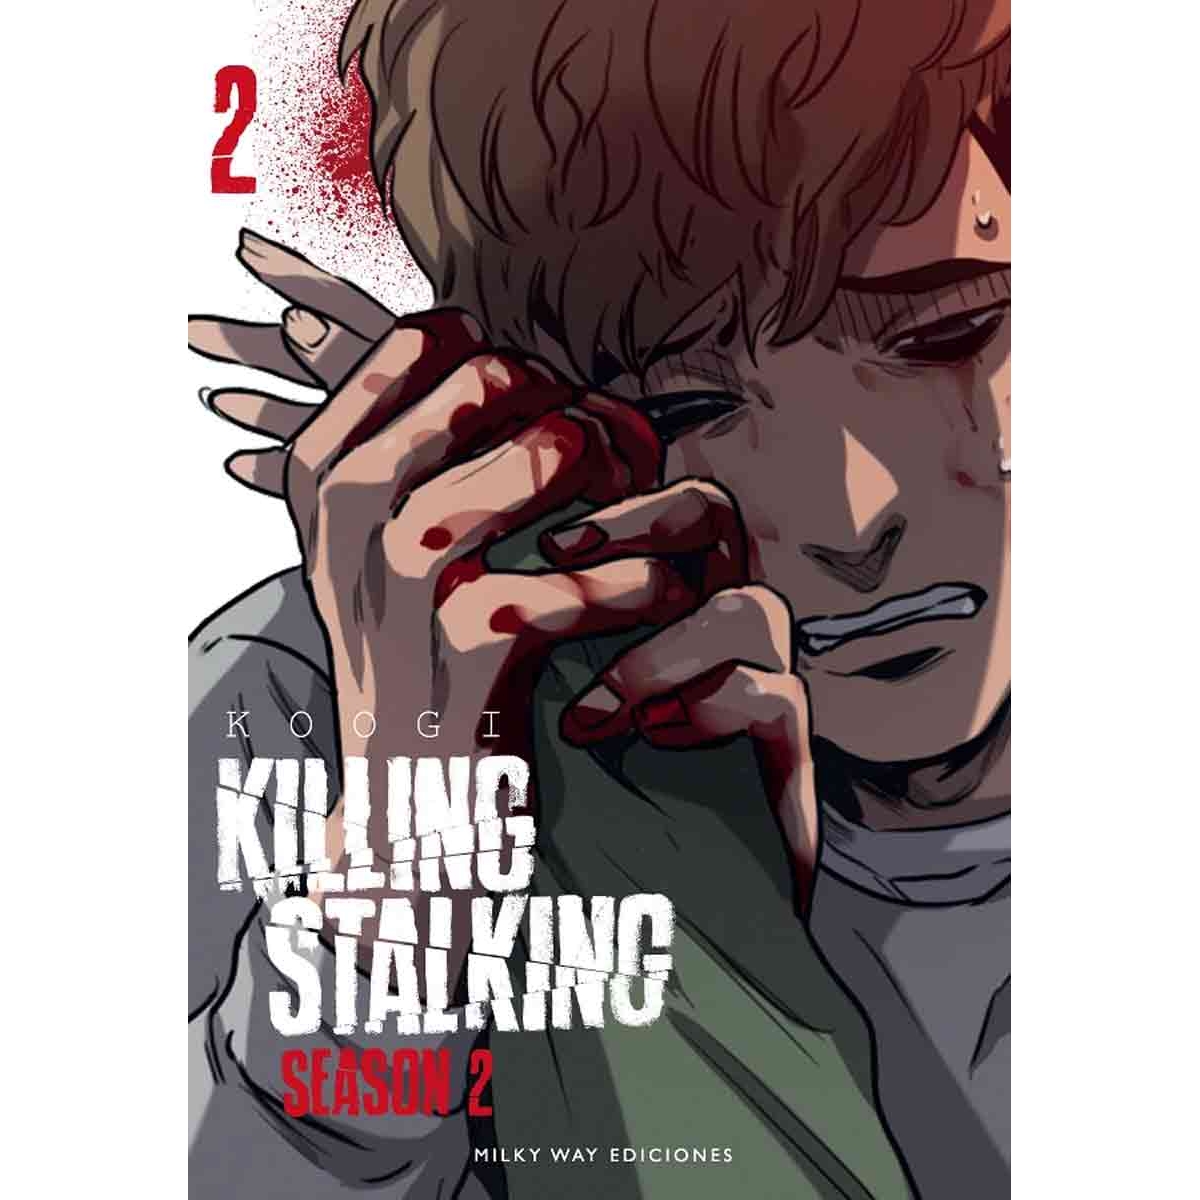 Killing Stalking Season 2...